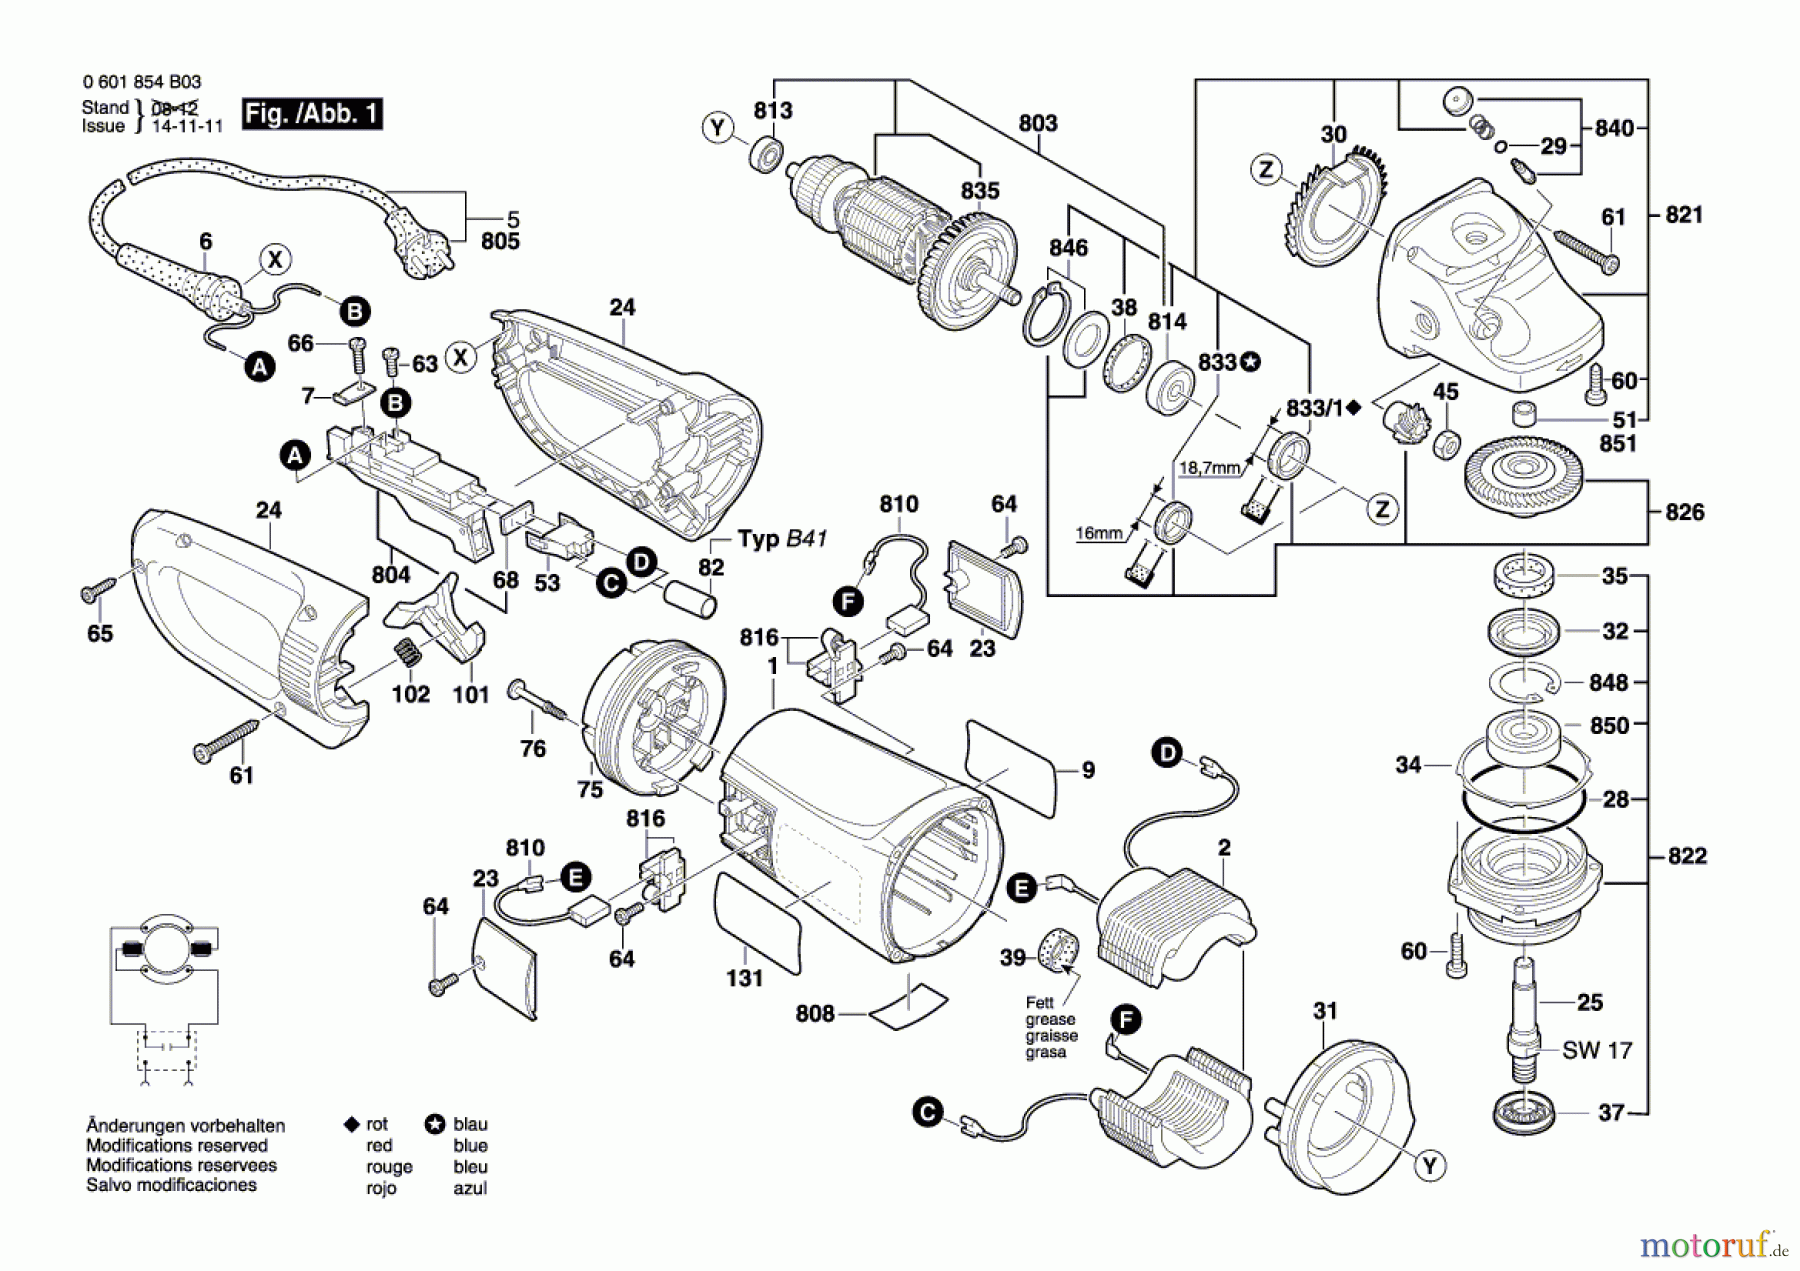  Bosch Werkzeug Winkelschleifer GWS 26-180 BV Seite 1